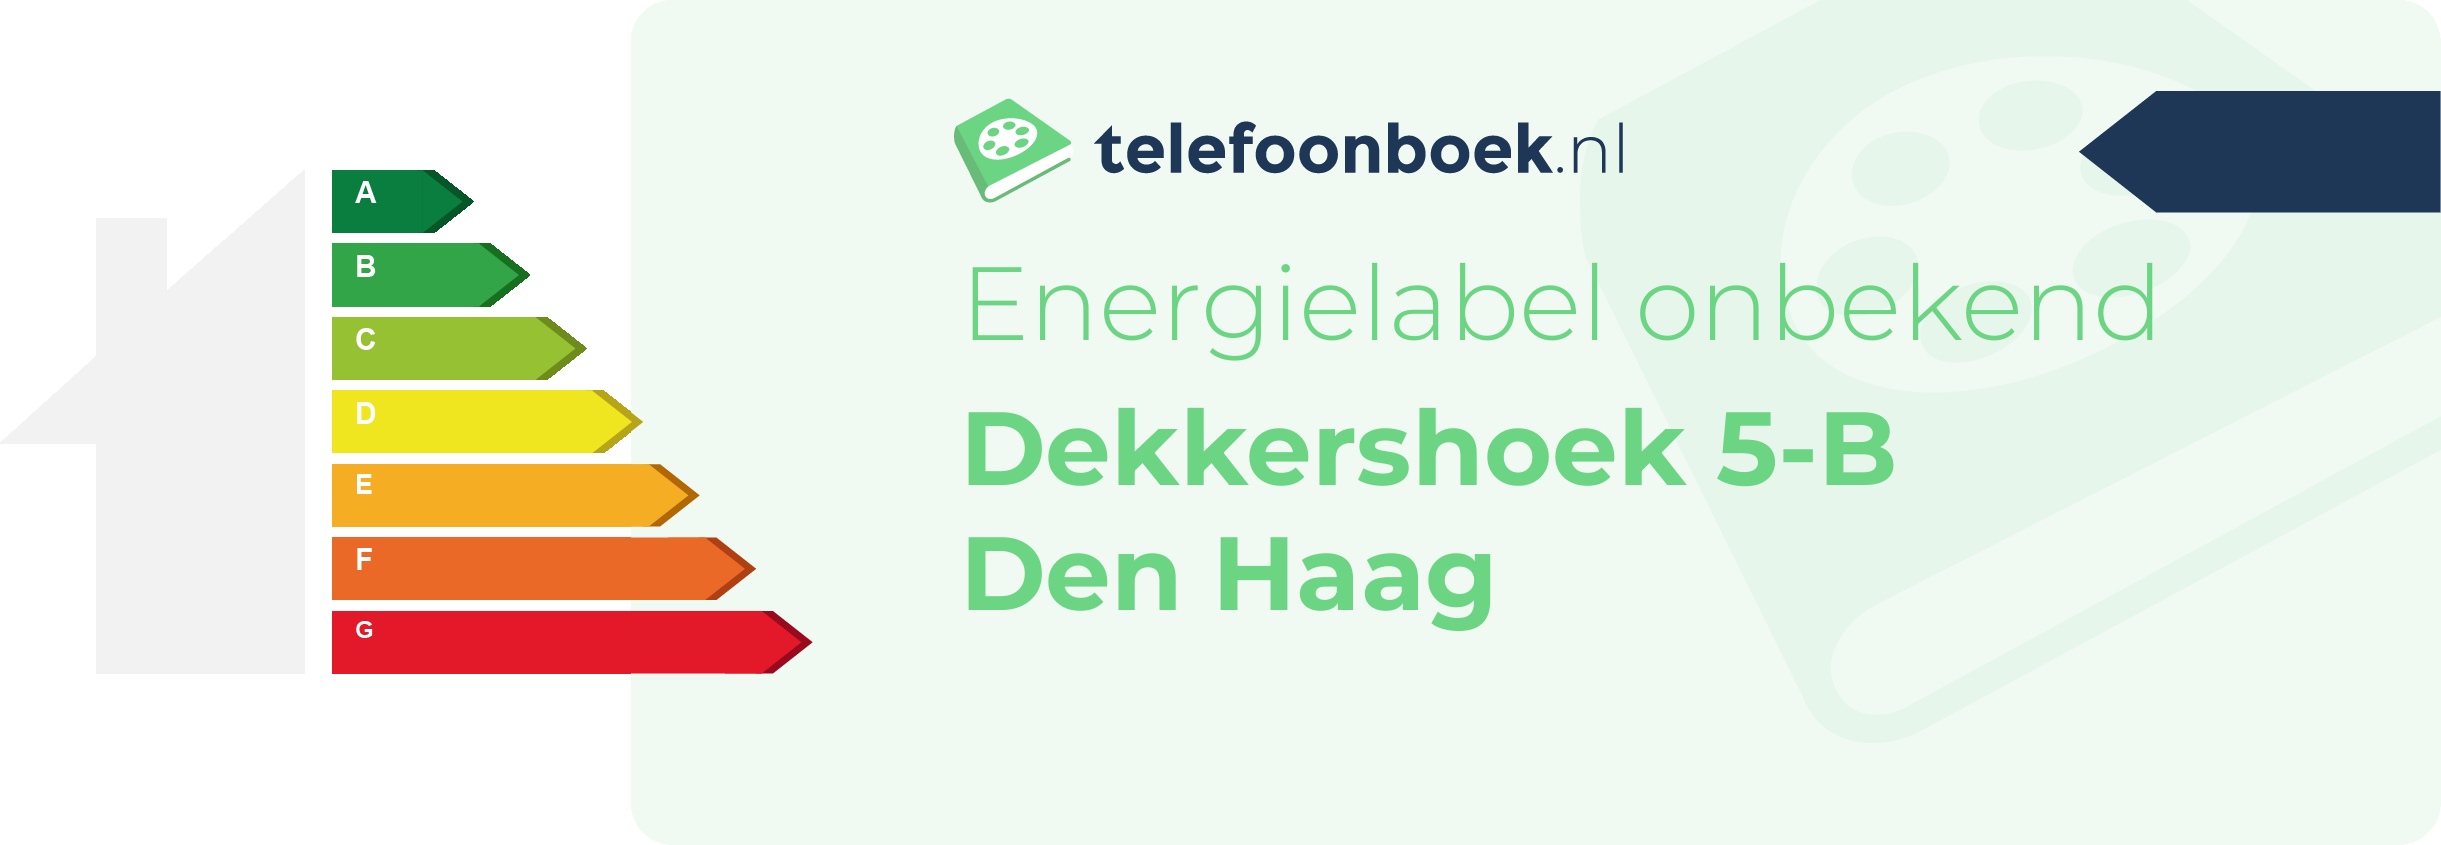 Energielabel Dekkershoek 5-B Den Haag